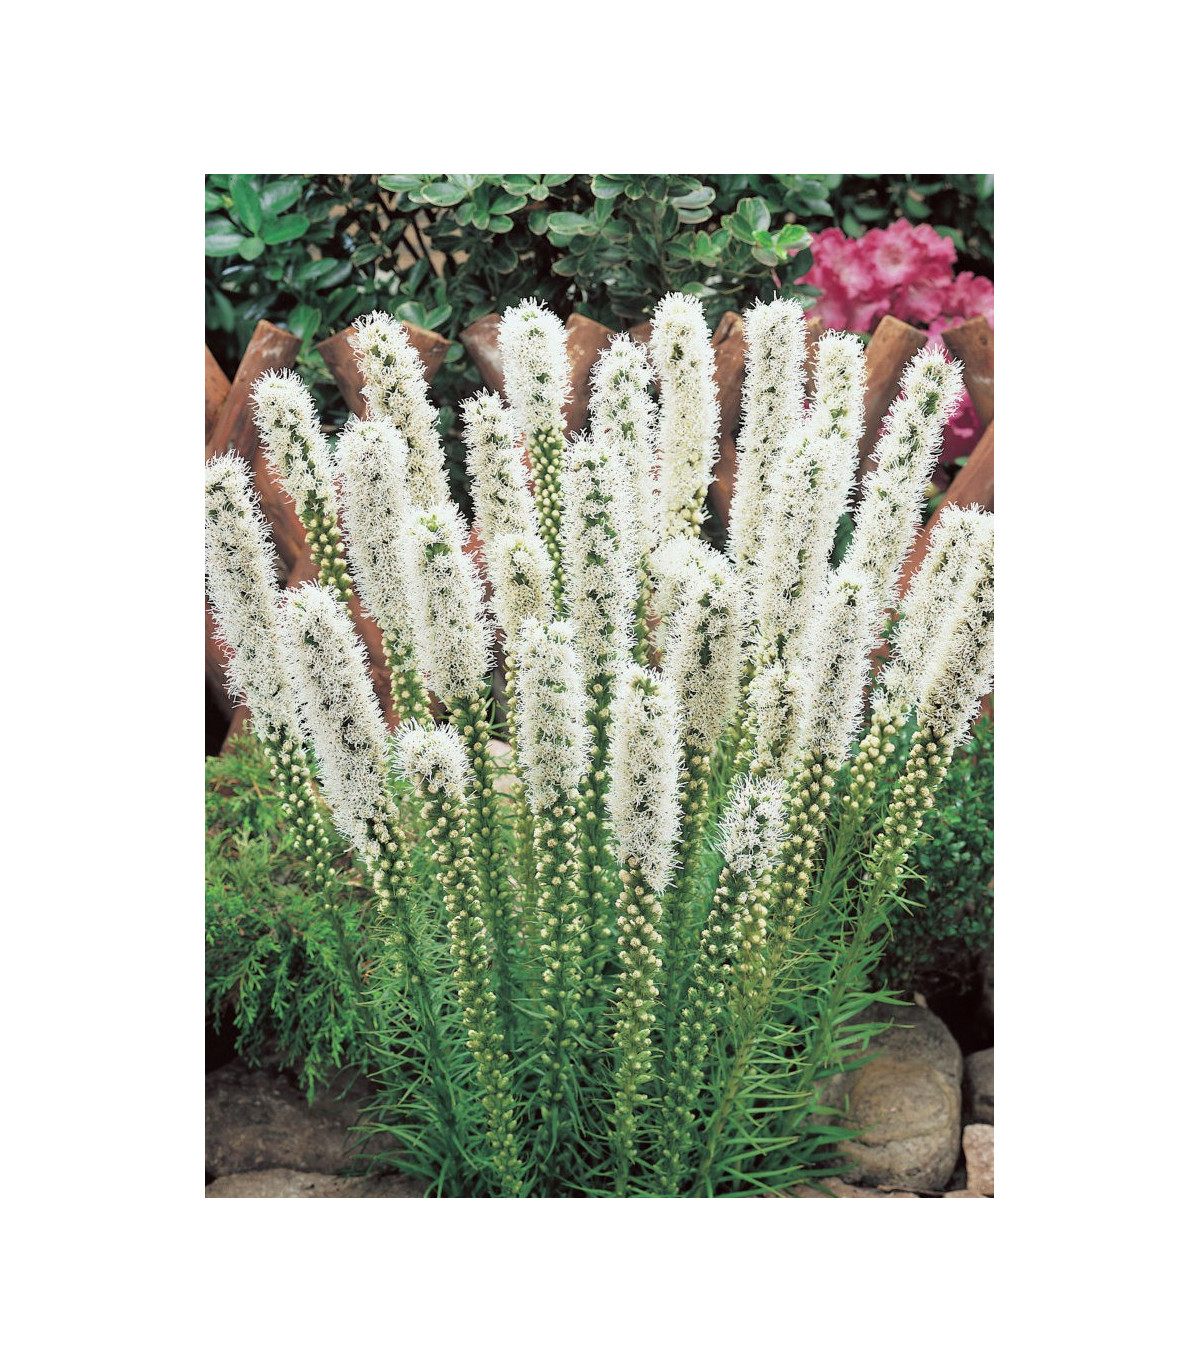 Šuškarda klasnatá Floristan White - Liatris spicata - prodej semen - 20 ks